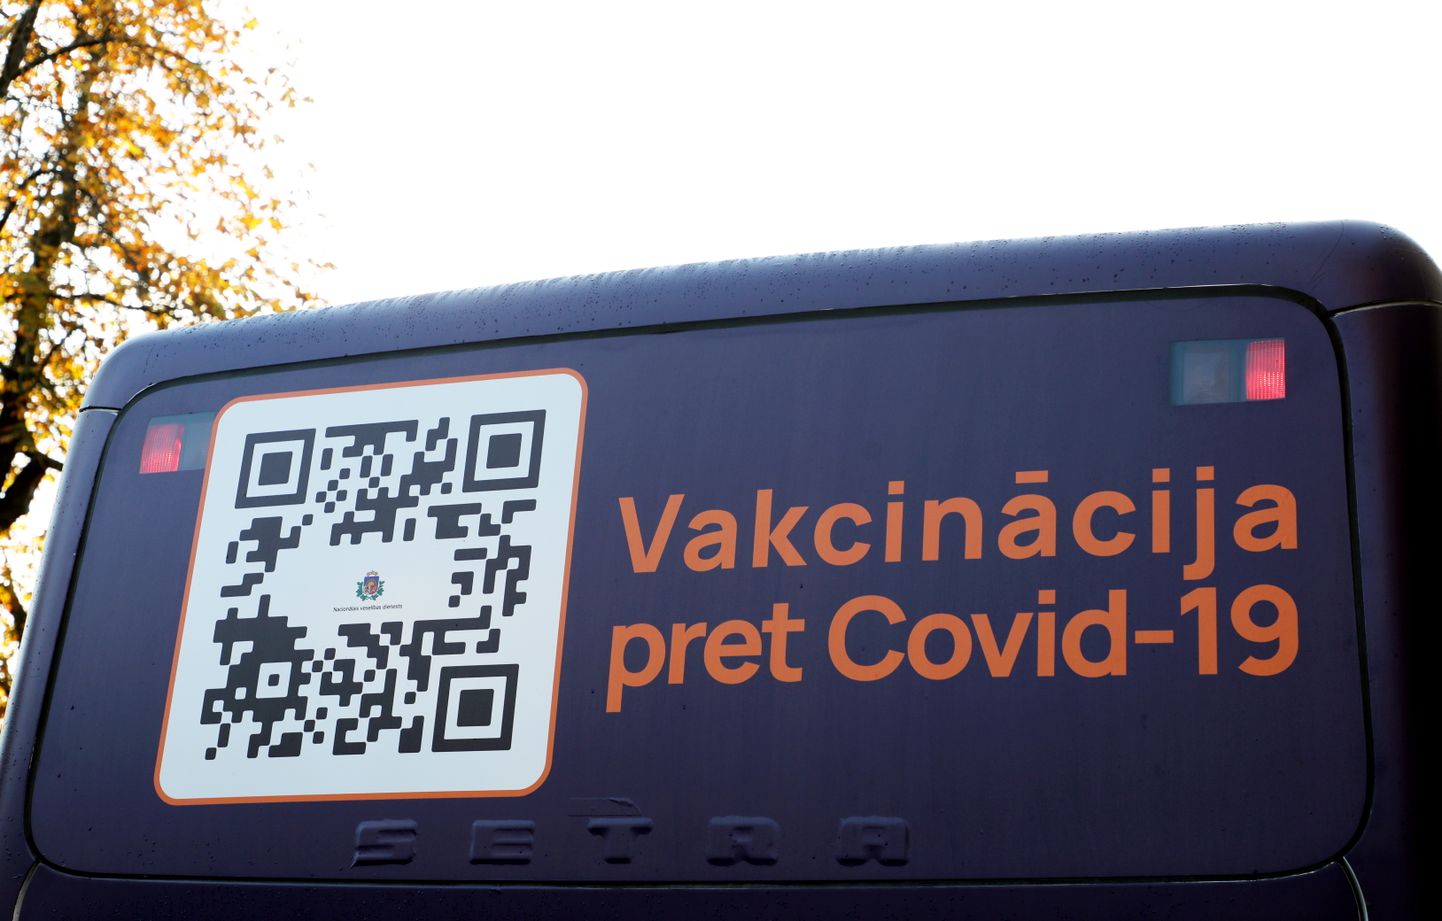 Izbraukuma vakcinācijai pret Covid-19 speciāli pielāgotais autobuss pie Zasulauka stacijas.